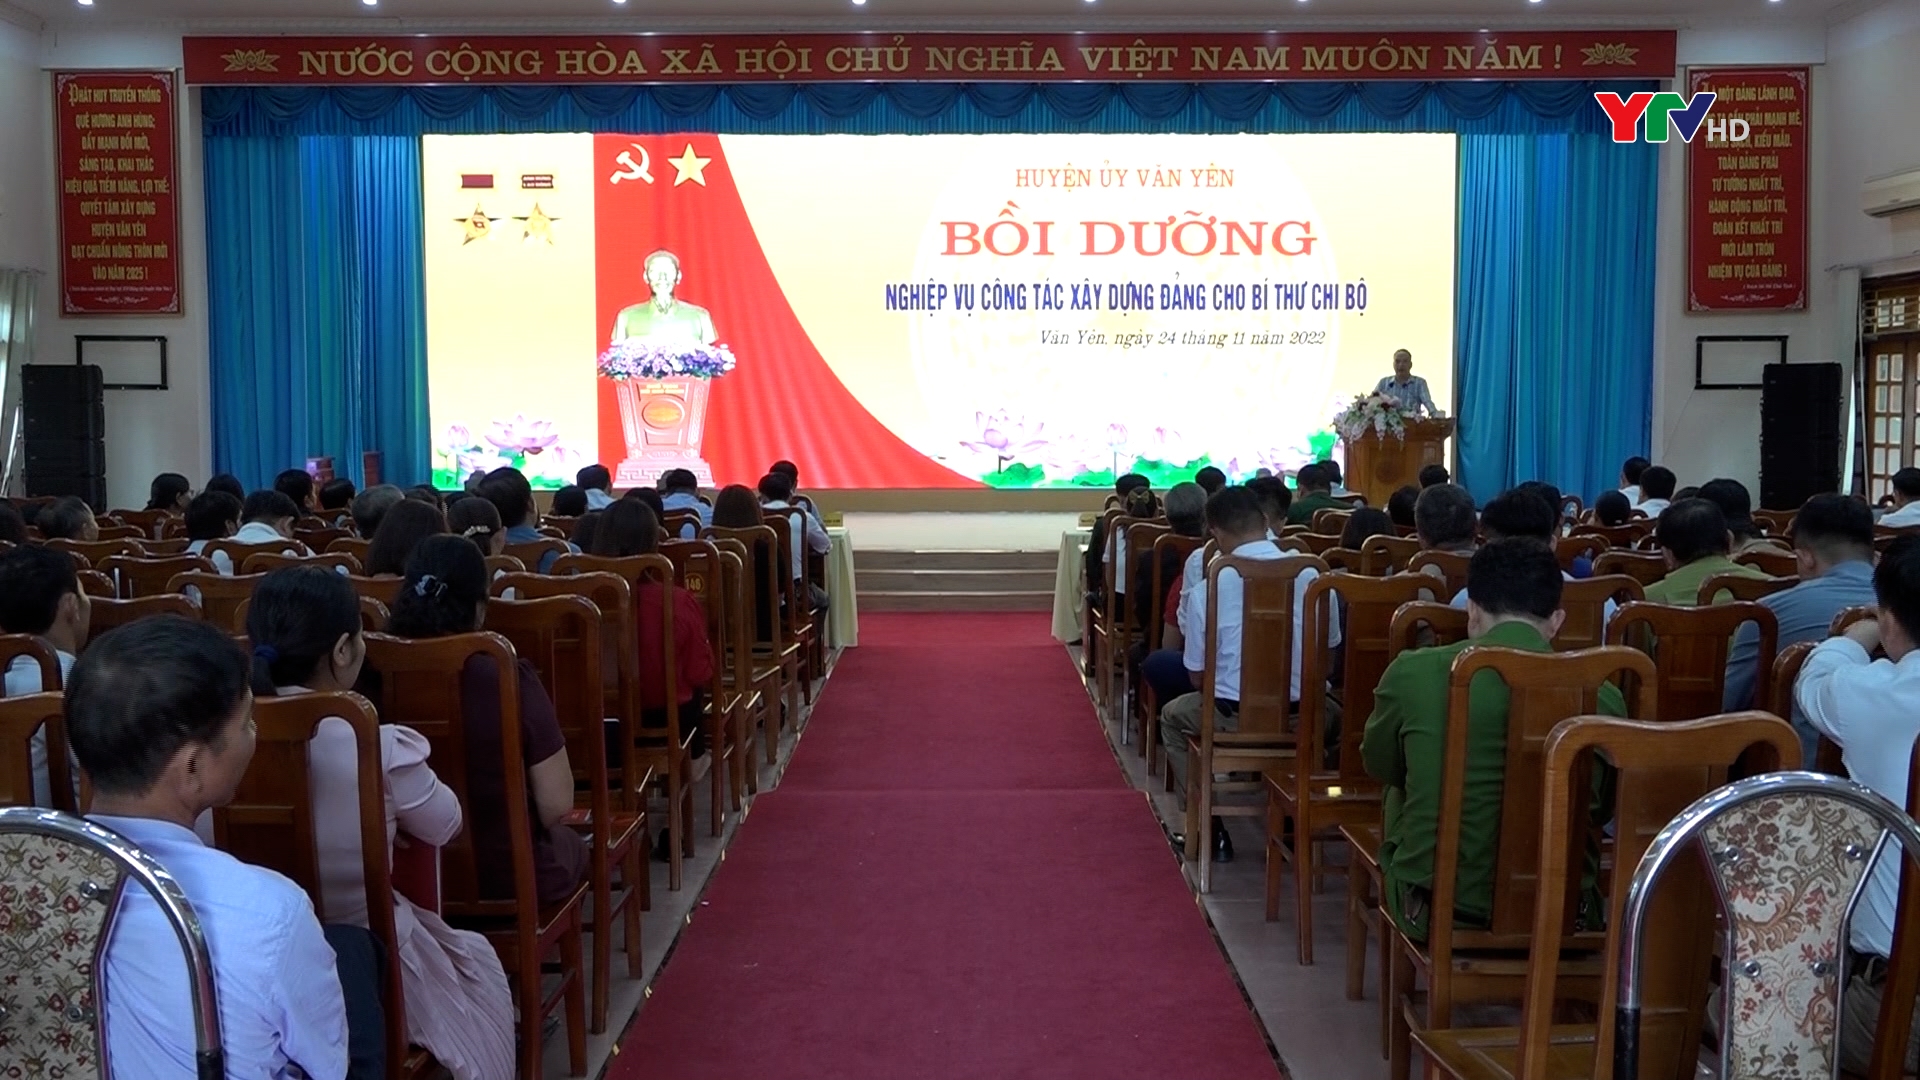 Huyện ủy Văn Yên bồi dưỡng nghiệp vụ công tác xây dựng Đảng cho bí thư chi bộ